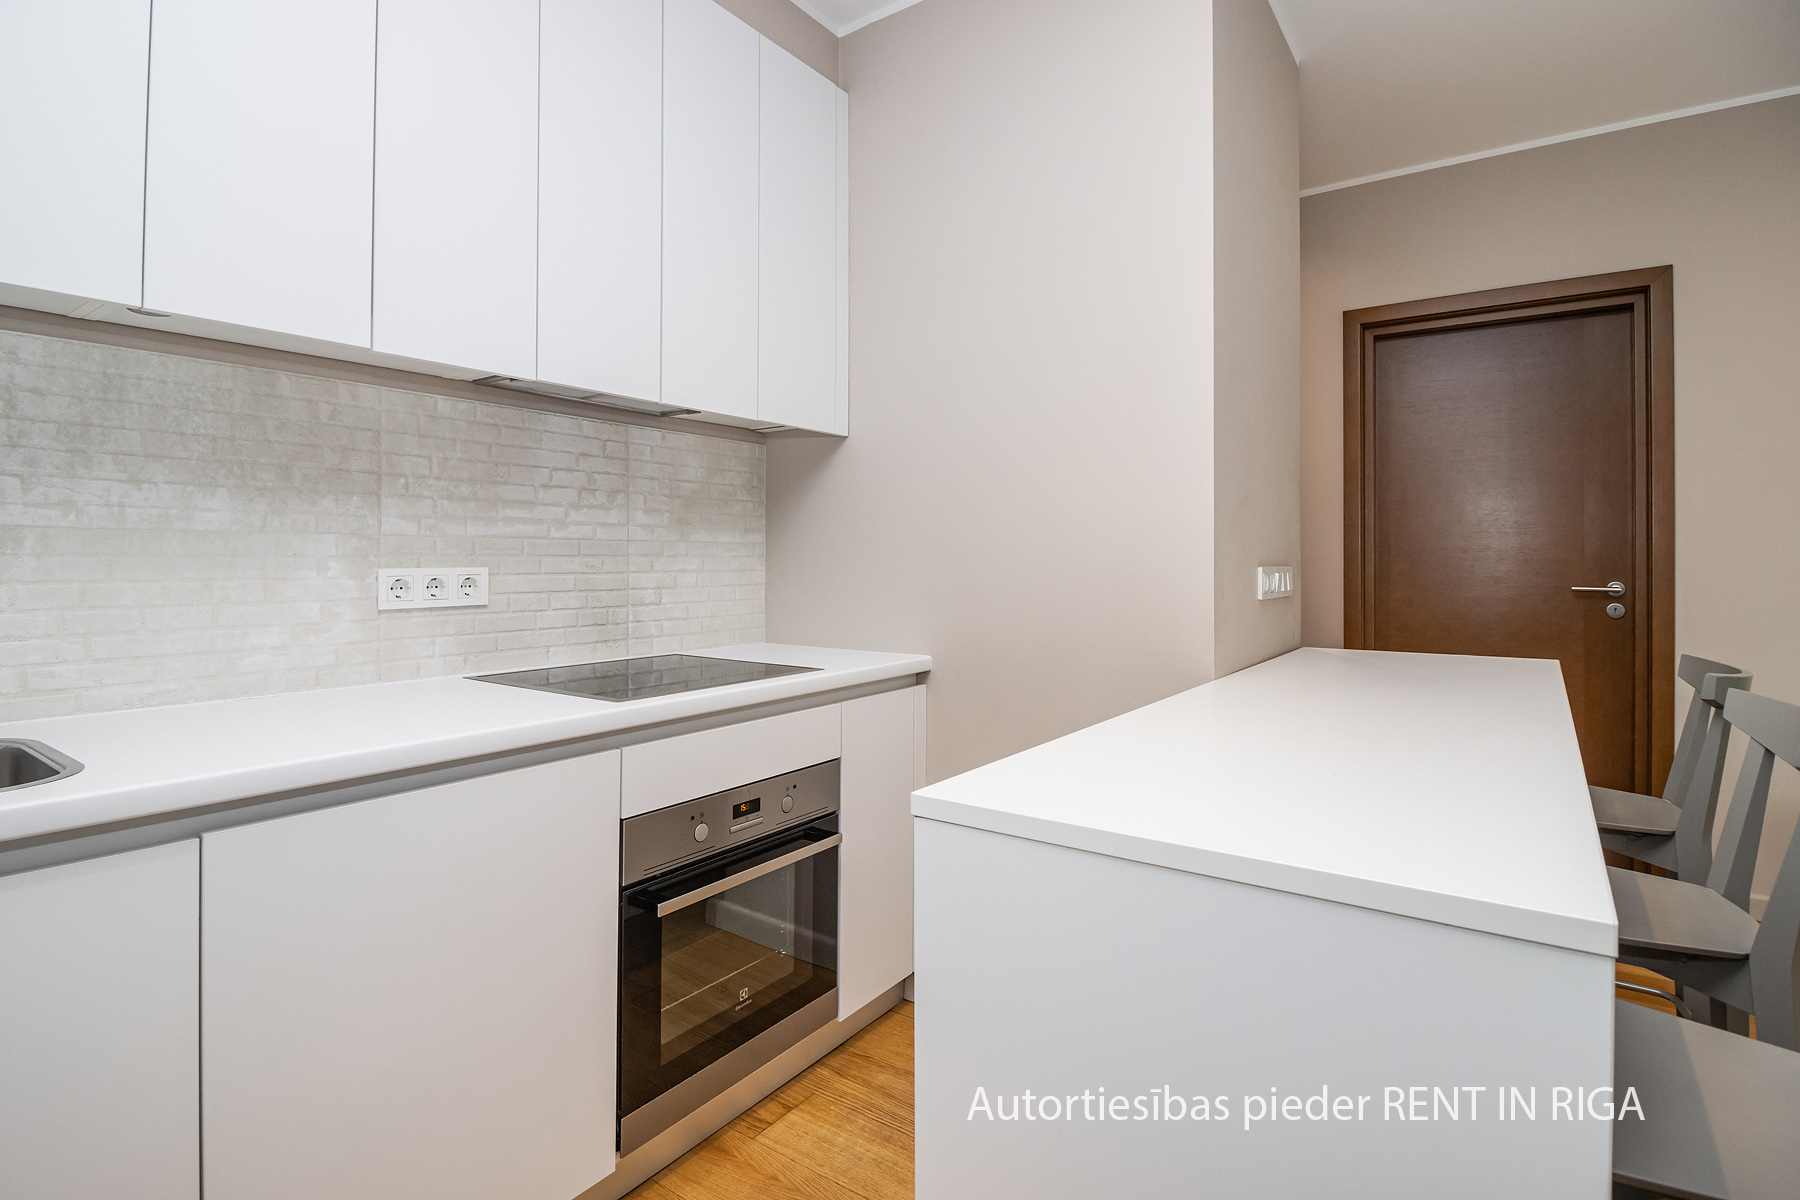 Apartment for rent, Gustava Zemgala gatve 78 - Image 1